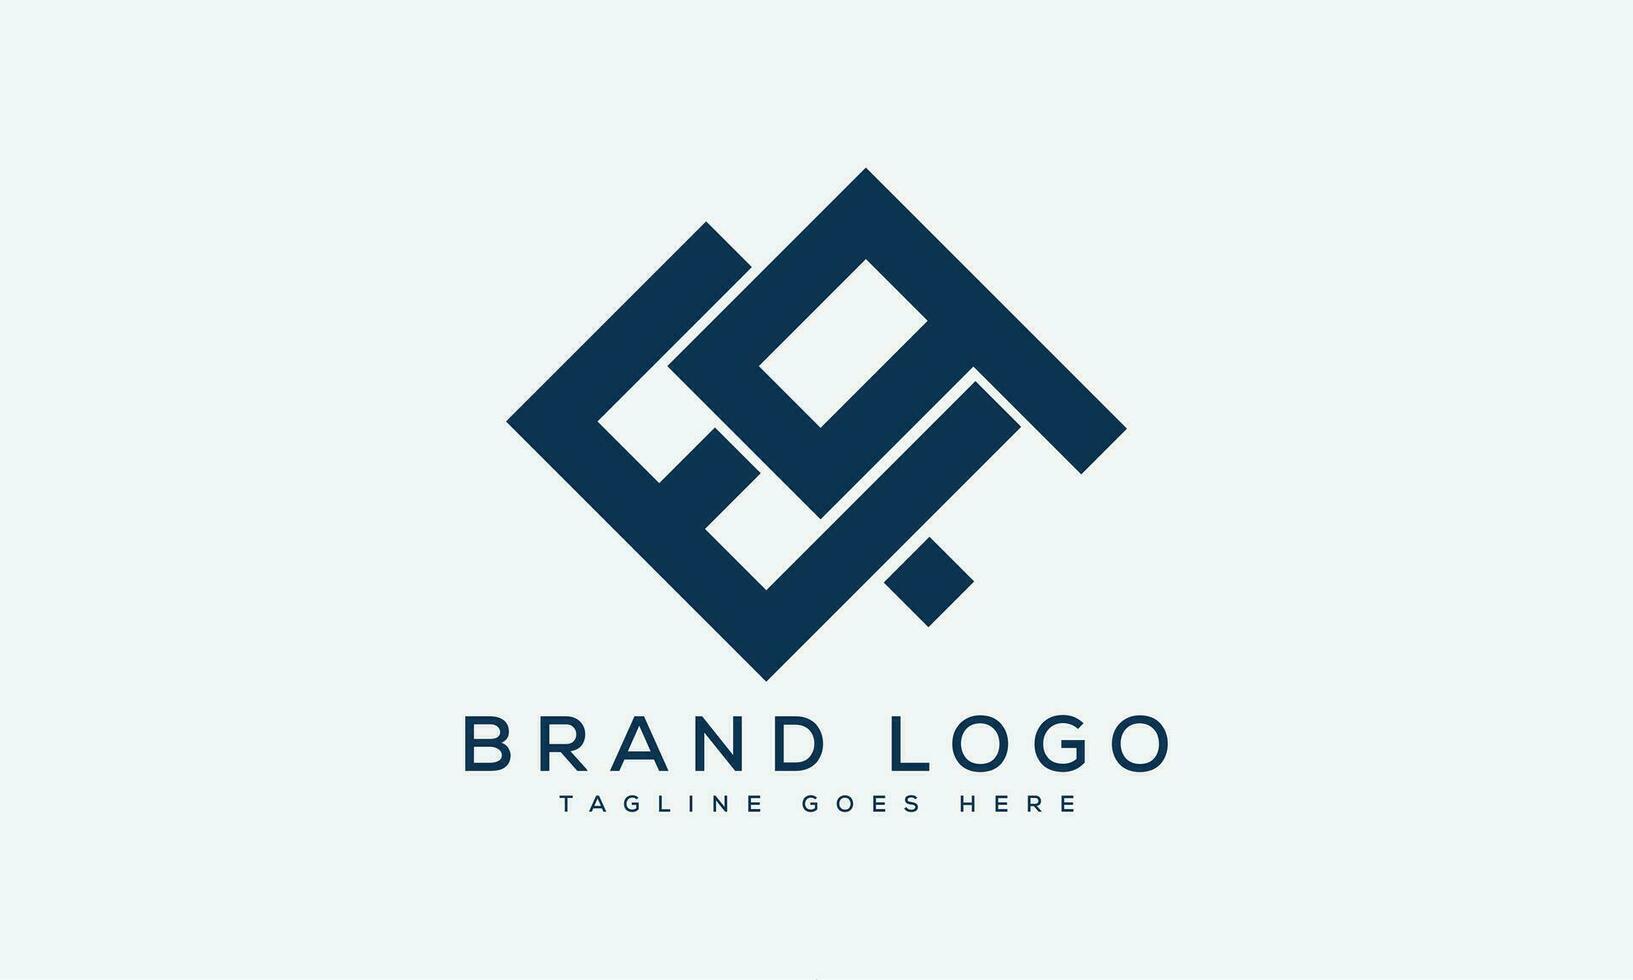 brev ea logotyp design vektor mall design för varumärke.